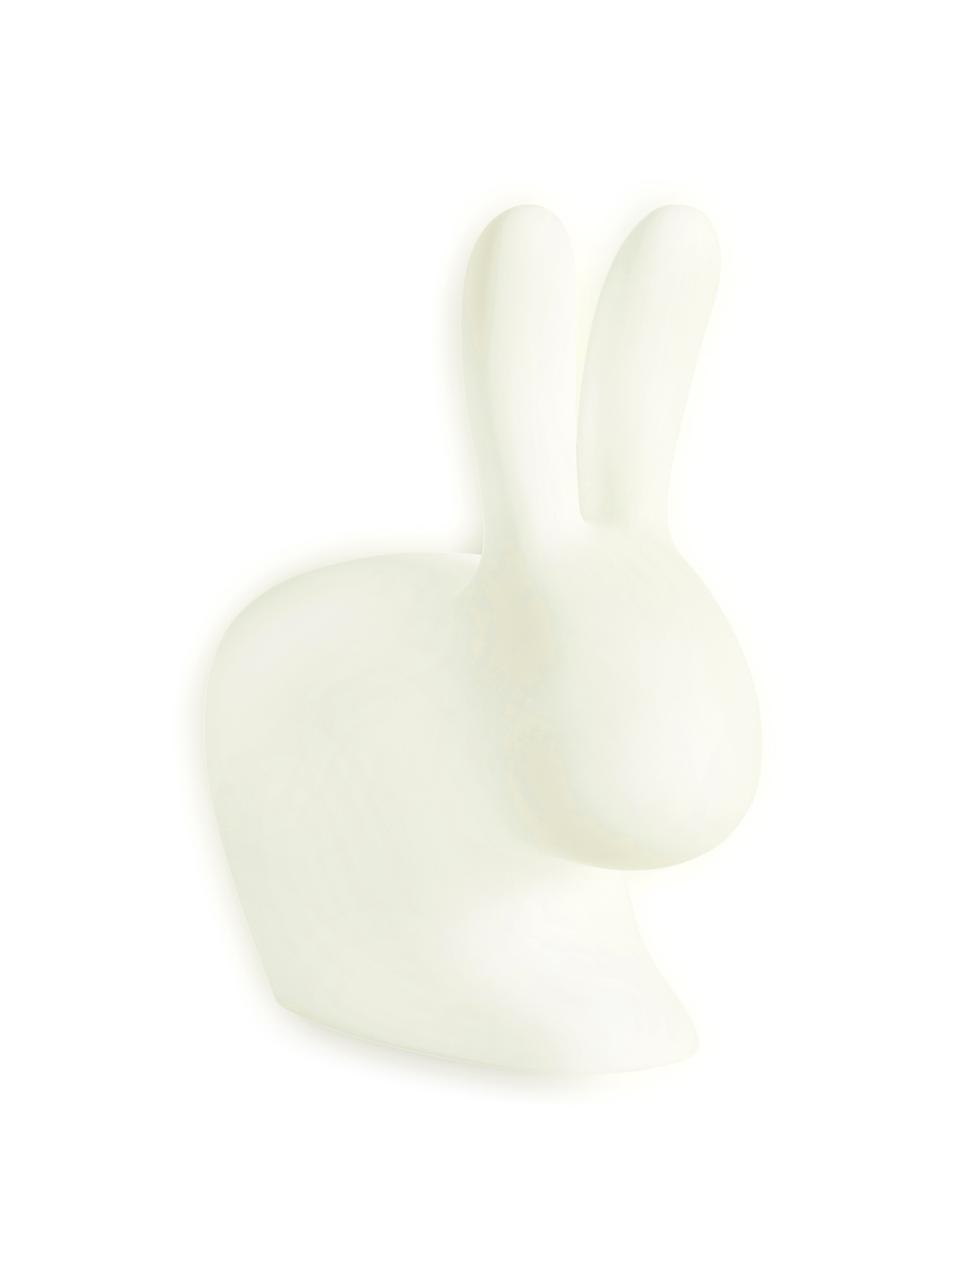 Lámpara de pie Rabbit, Plástico (polietileno), Blanco, An 46 x Al 53 cm